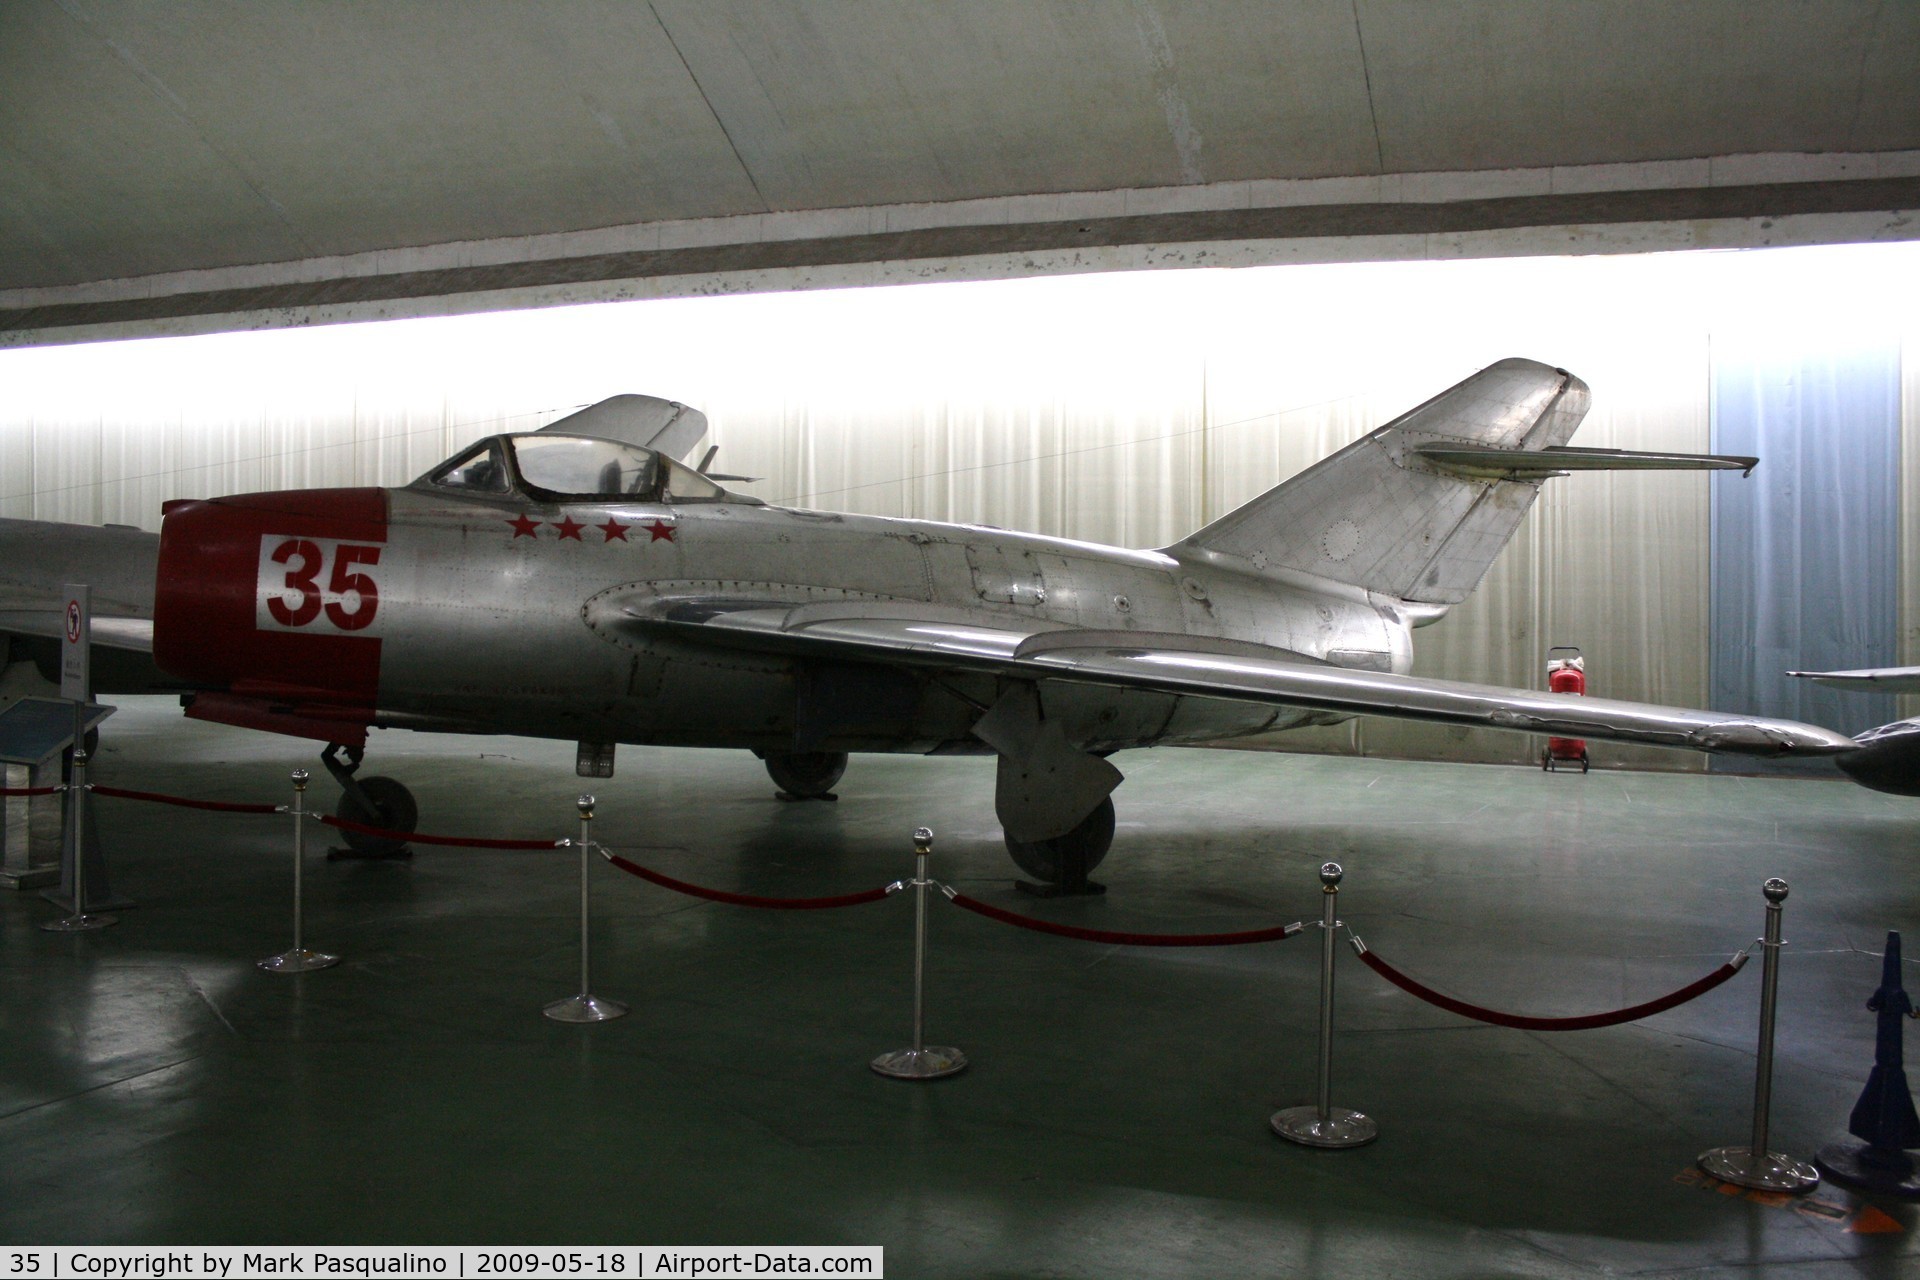 35, Mikoyan-Gurevich MiG-15 C/N 515354, MiG-15